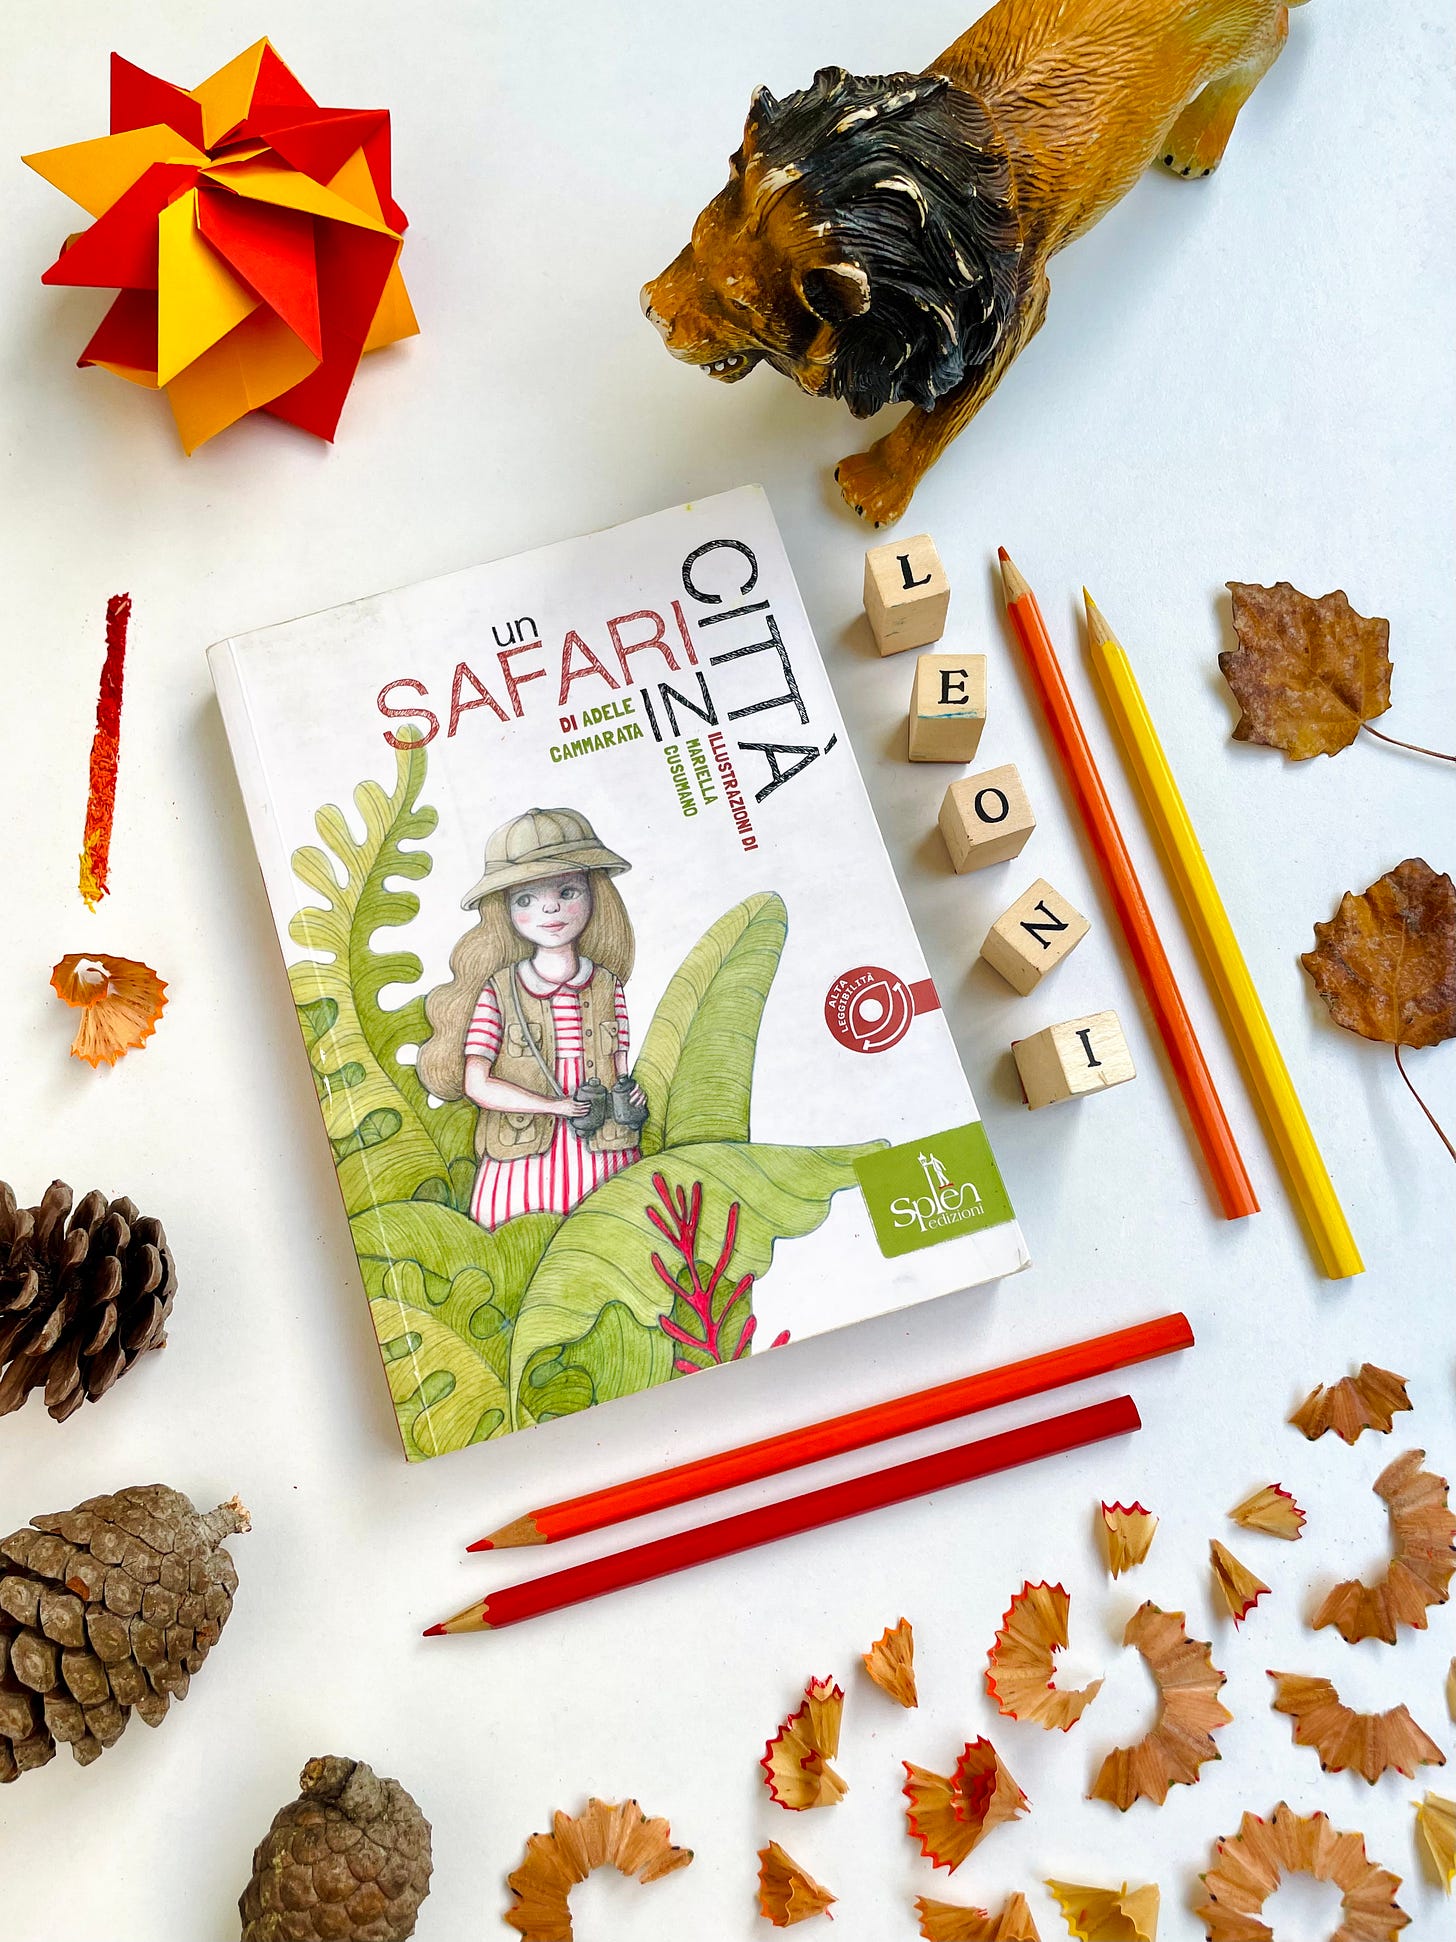 Un Safari in Città è un libro di Adele Cammarata, illustrato da Mariella Cusumano e pubblicato da Splen nel 2018